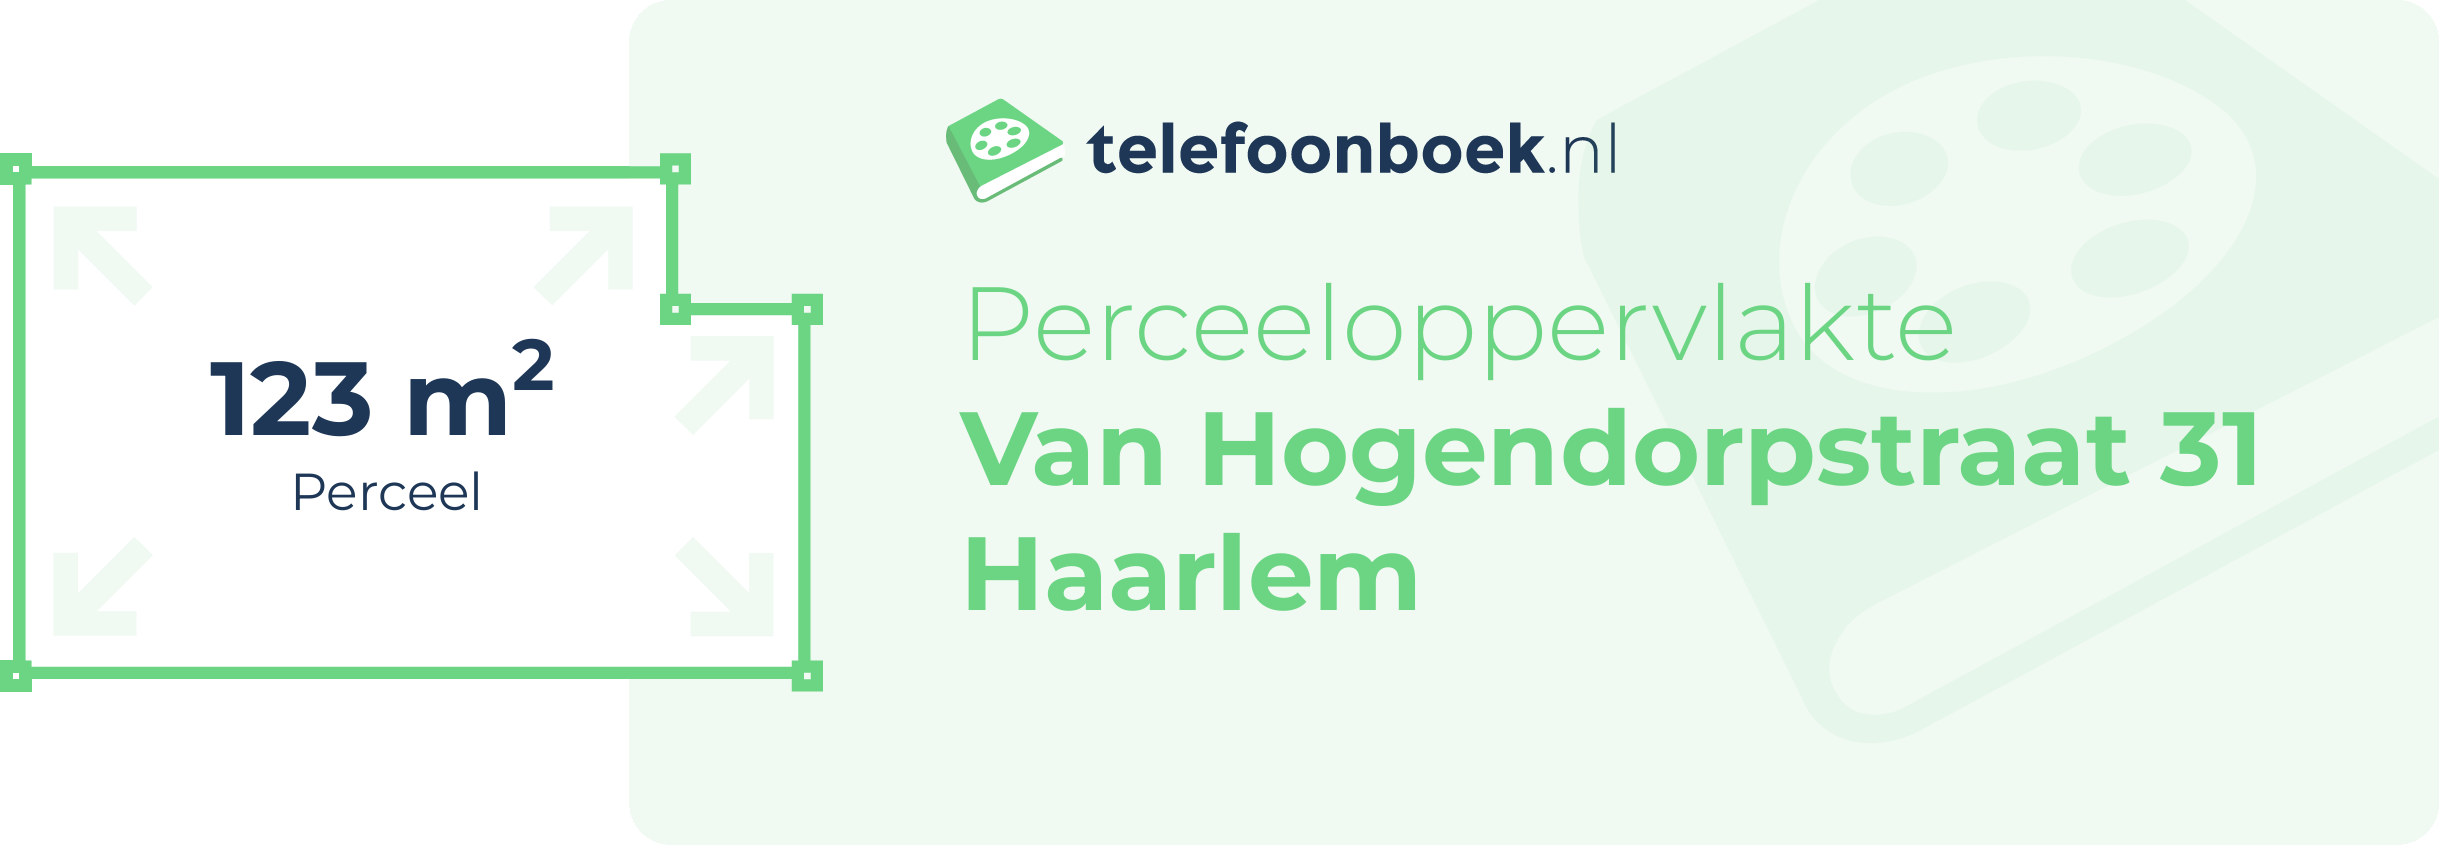 Perceeloppervlakte Van Hogendorpstraat 31 Haarlem